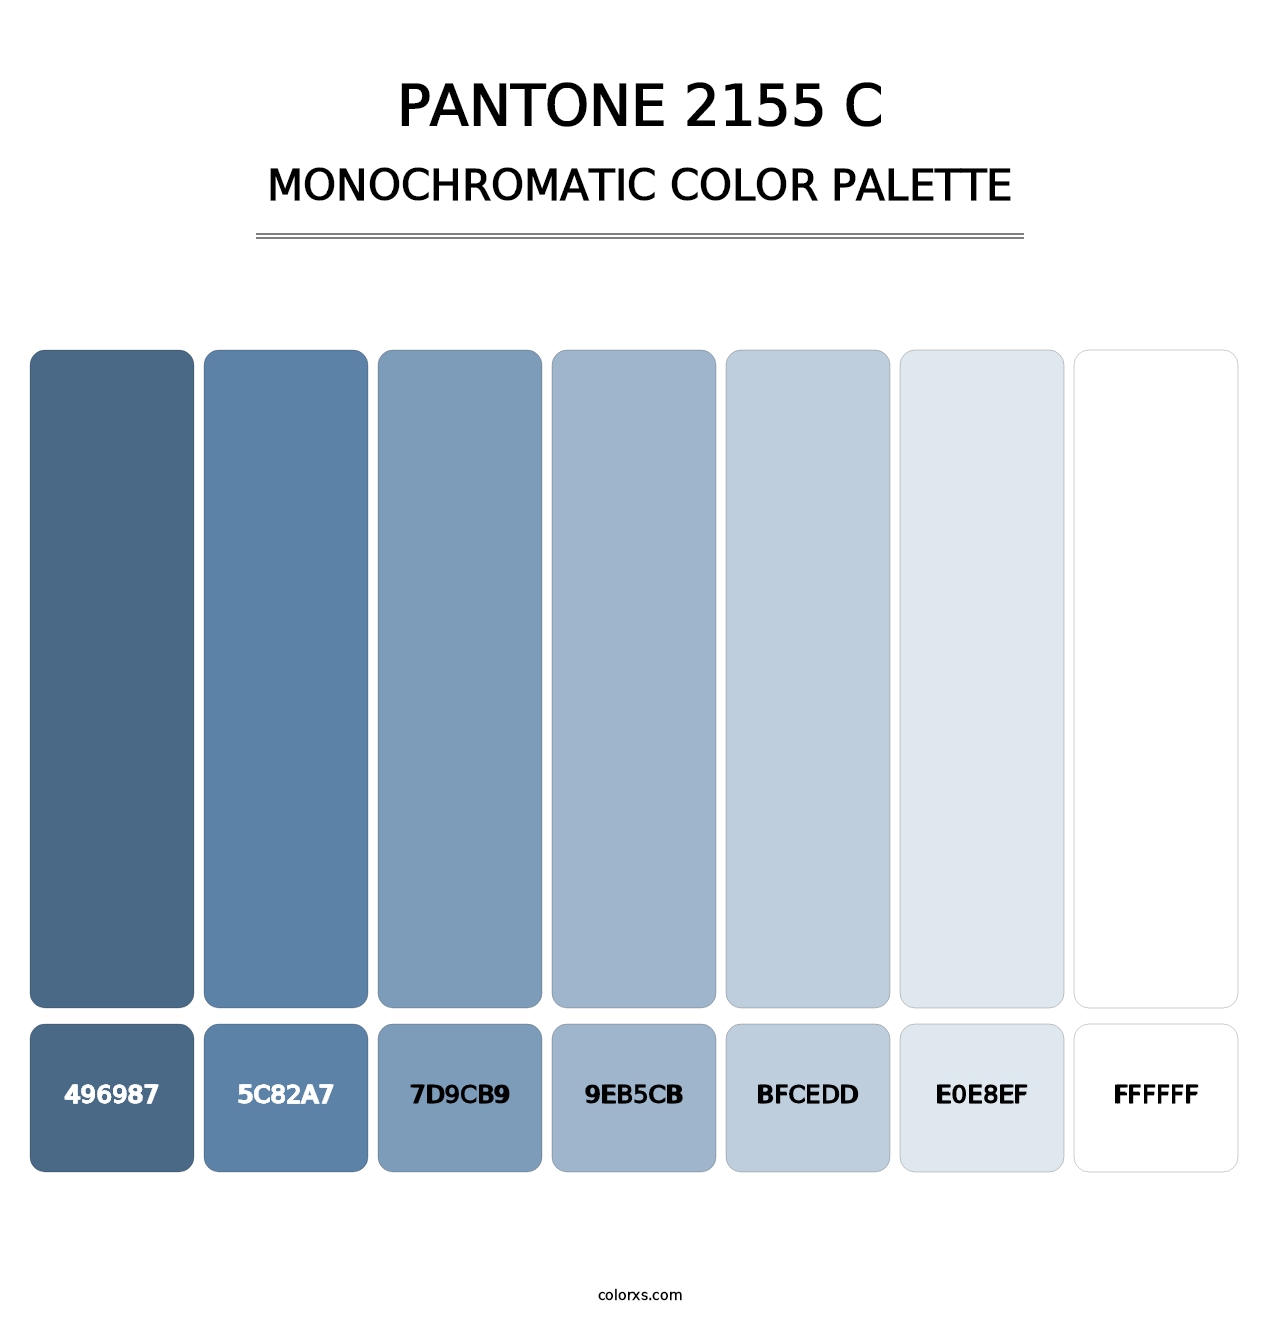 PANTONE 2155 C - Monochromatic Color Palette